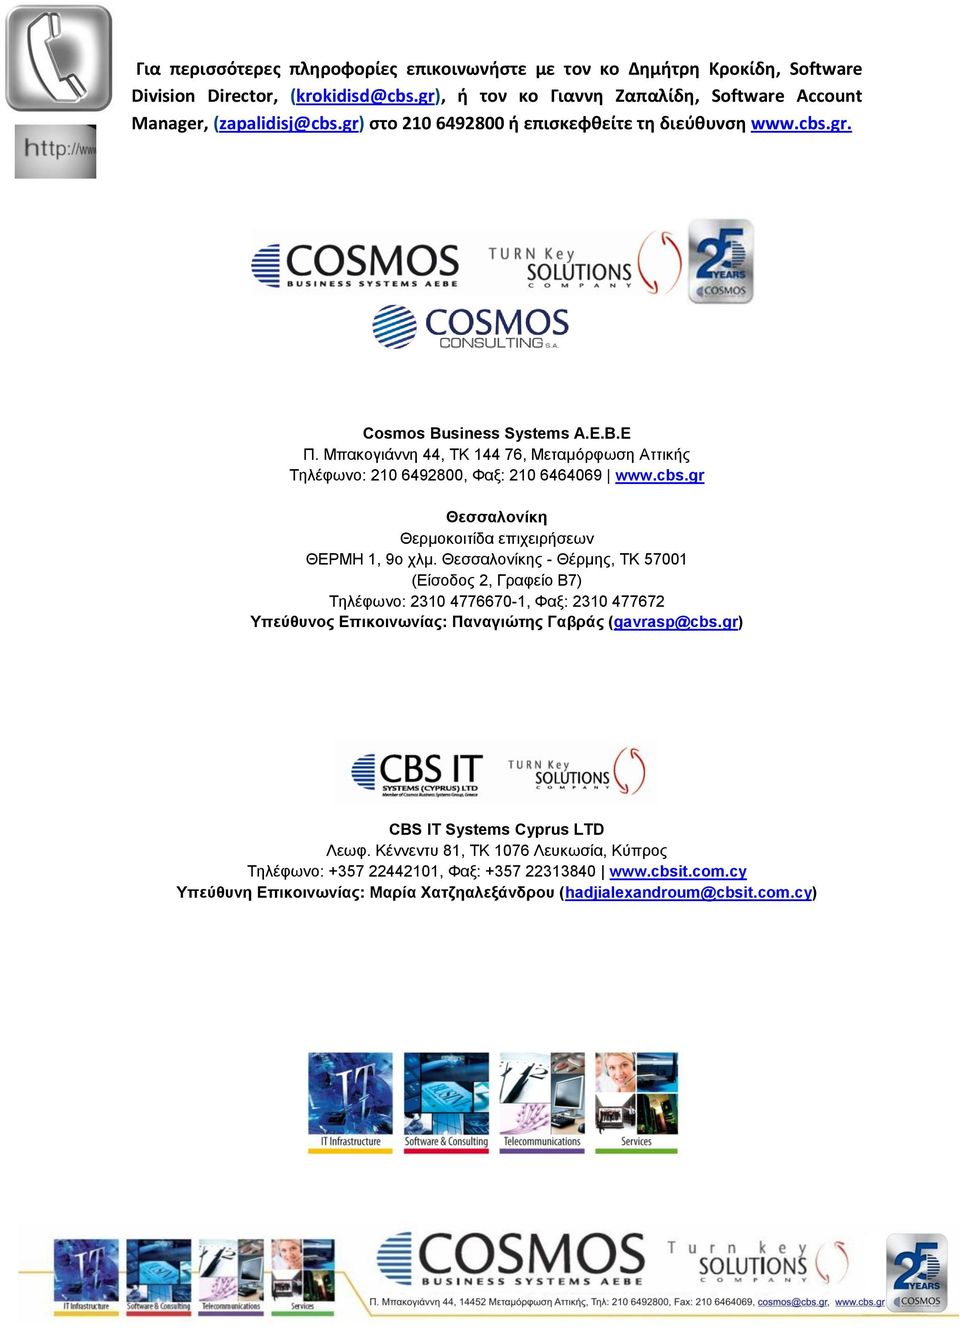 Θεσσαλονίκης - Θέρμης, ΤΚ 57001 (Είσοδος 2, Γραφείο Β7) Τηλέφωνο: 2310 4776670-1, Φαξ: 2310 477672 Υπεύθυνος Επικοινωνίας: Παναγιώτης Γαβράς (gavrasp@cbs.gr) CBS IT Systems Cyprus LTD Λεωφ.